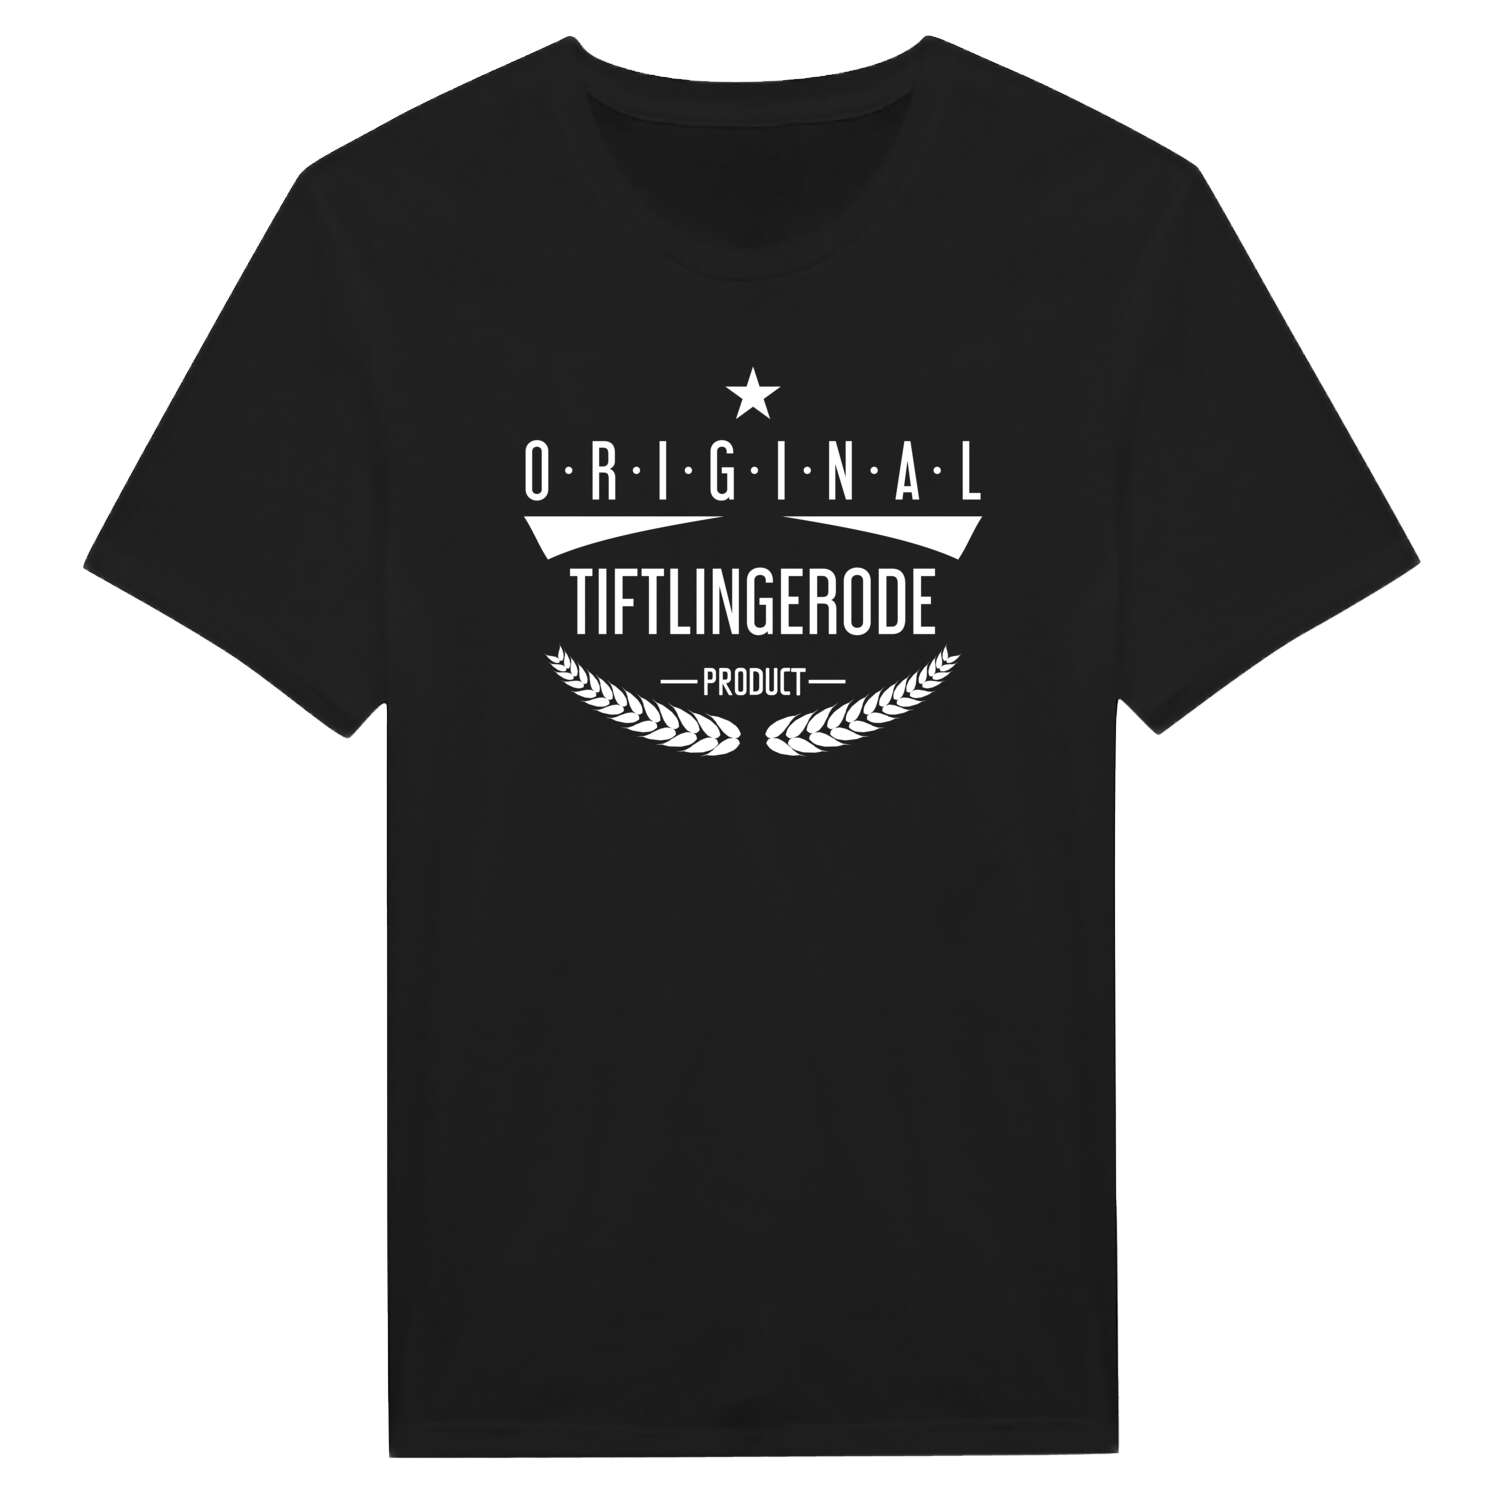 Tiftlingerode T-Shirt »Original Product«